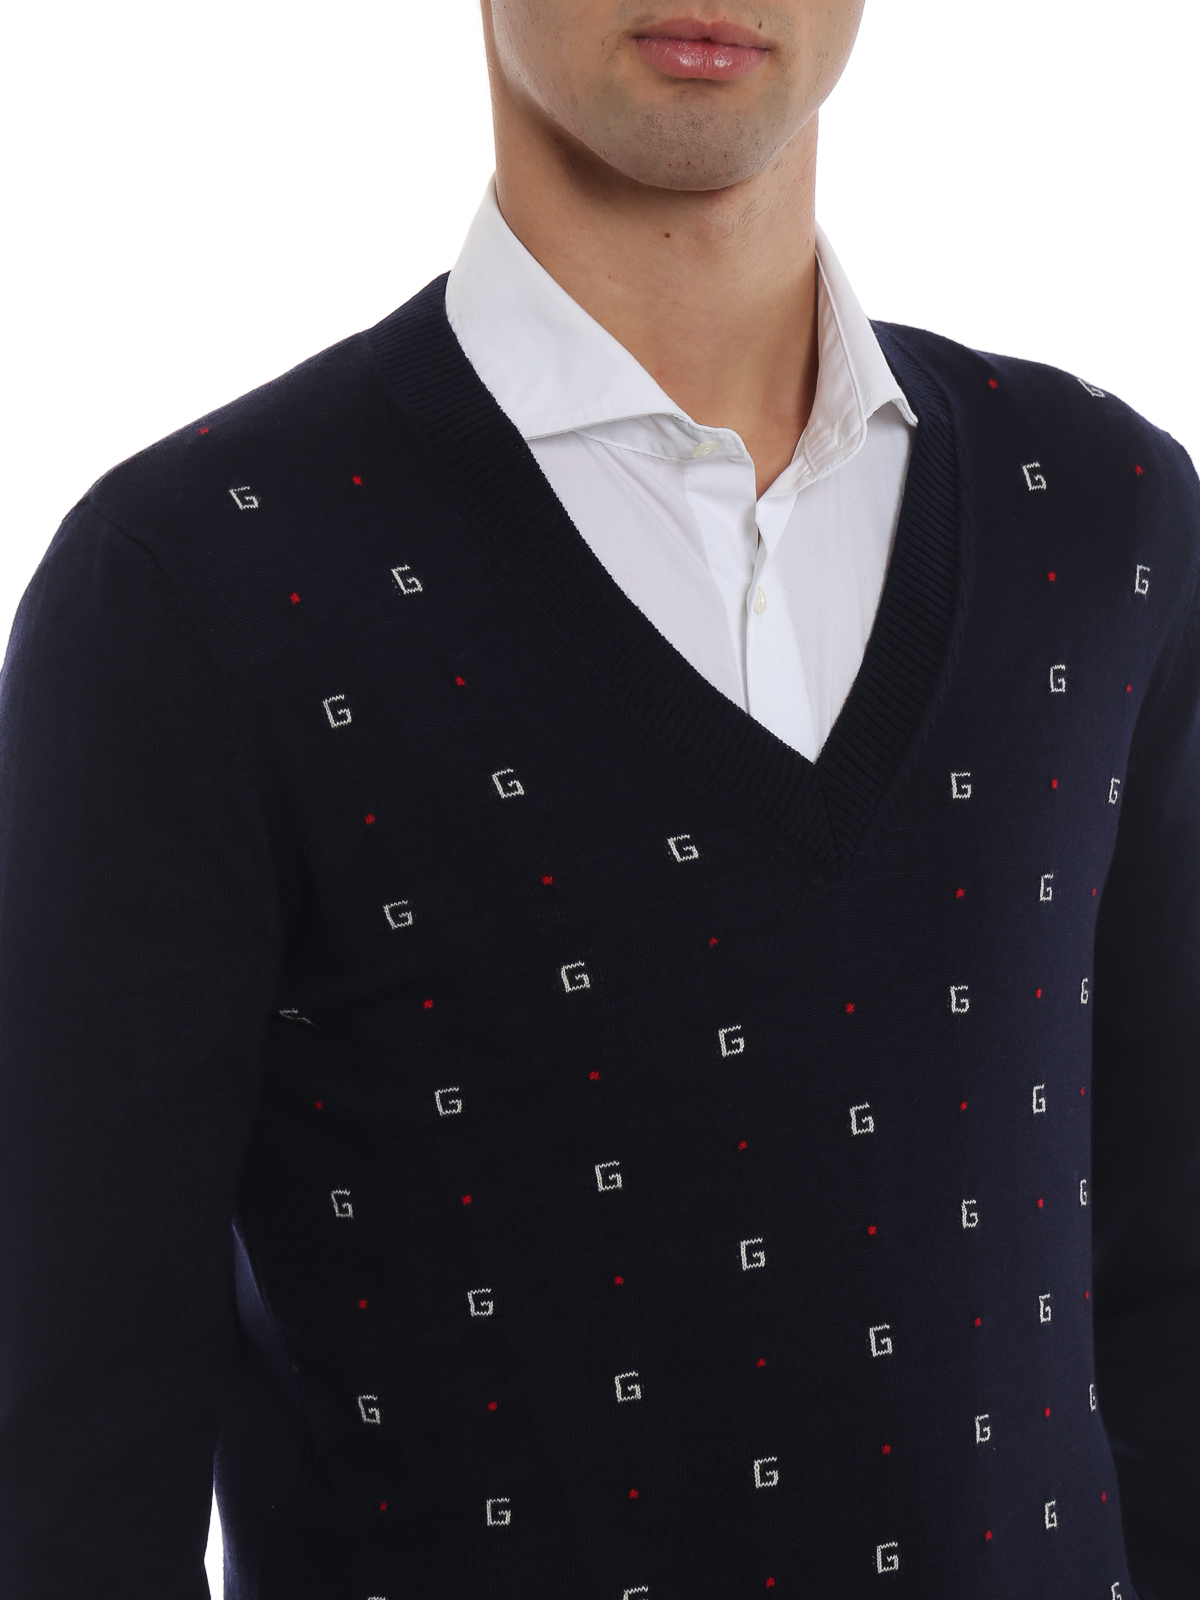 Gucci G Intarsia Navy Blue Wool Sweater یقه هفت xkabl4696